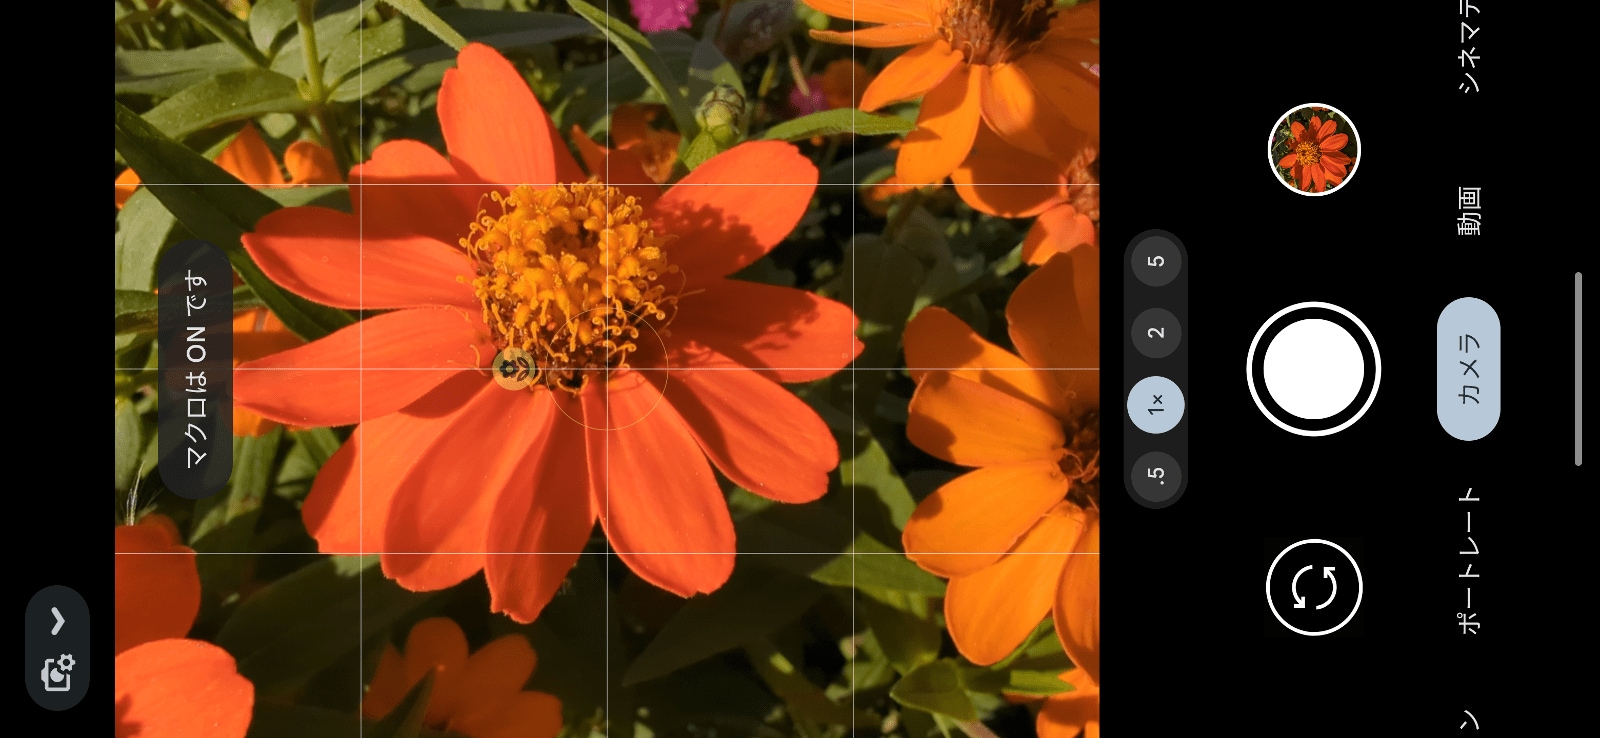 Pixel 7 Proでは自動的にマクロがオンになり、被写体にピントを合わせることができます